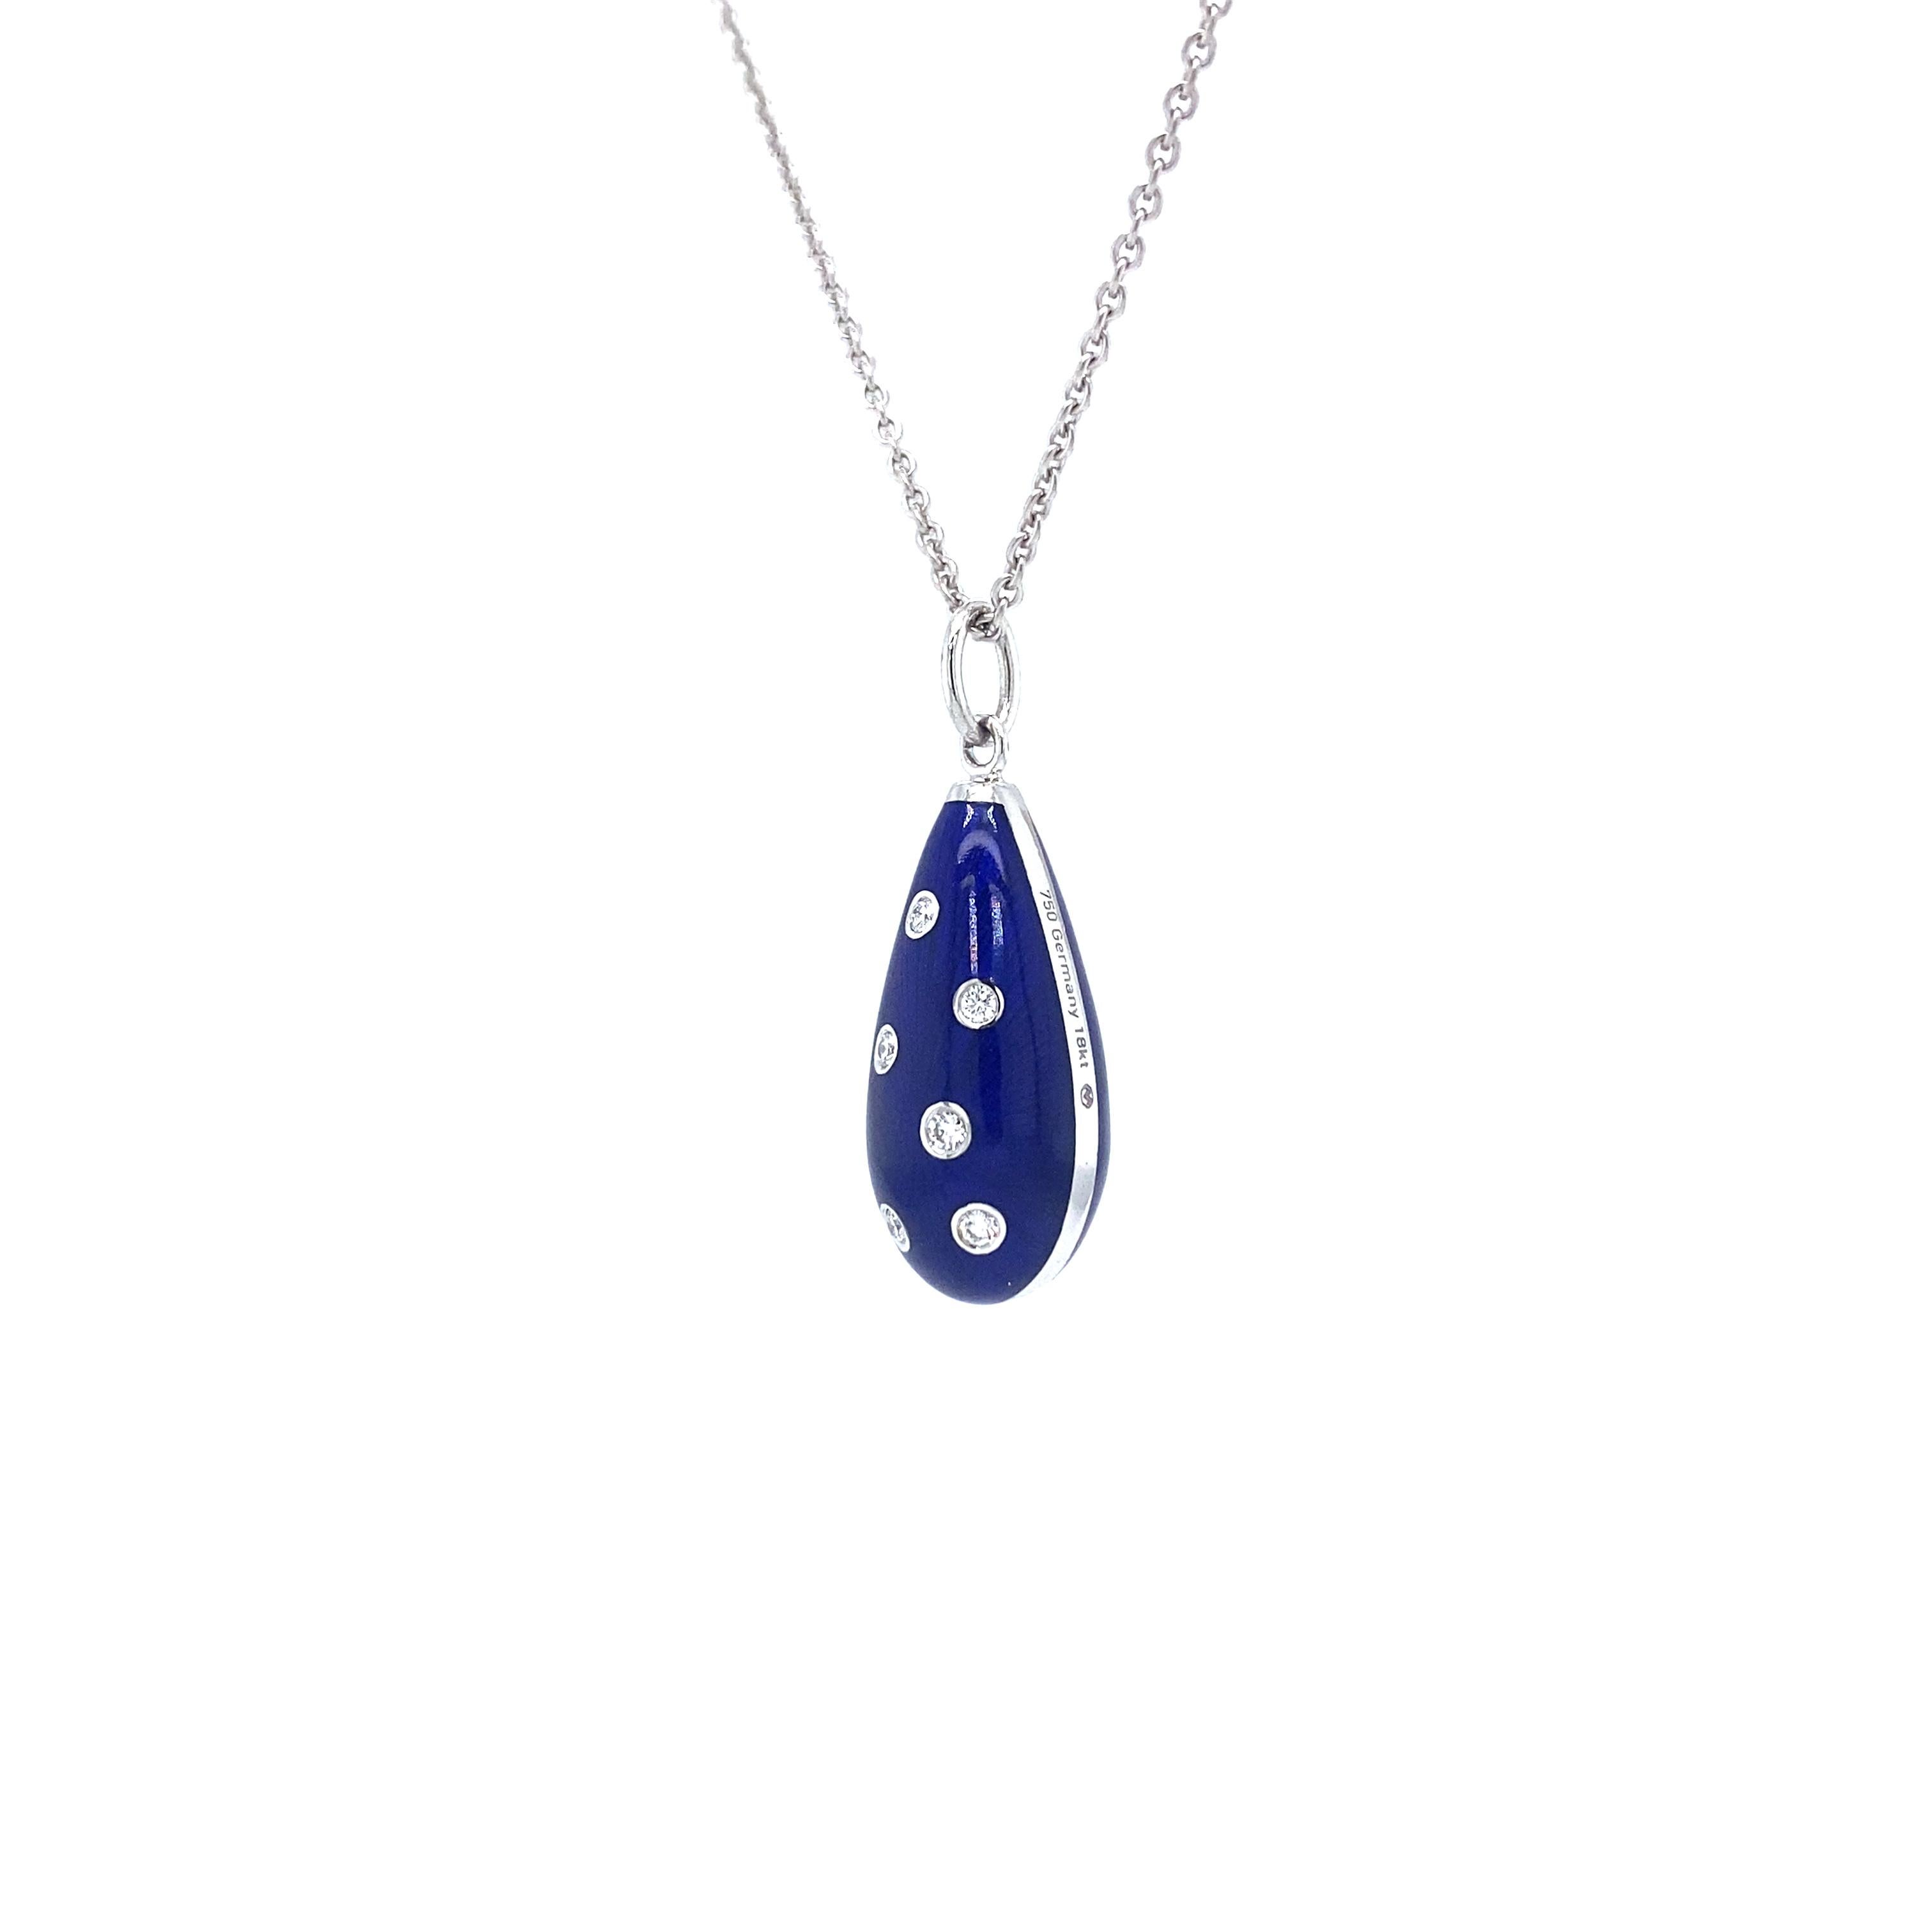 Women's Drop Pendant Necklace 18k White Gold Blue Guilloche Enamel 6 Diamonds 0.07ct GVS